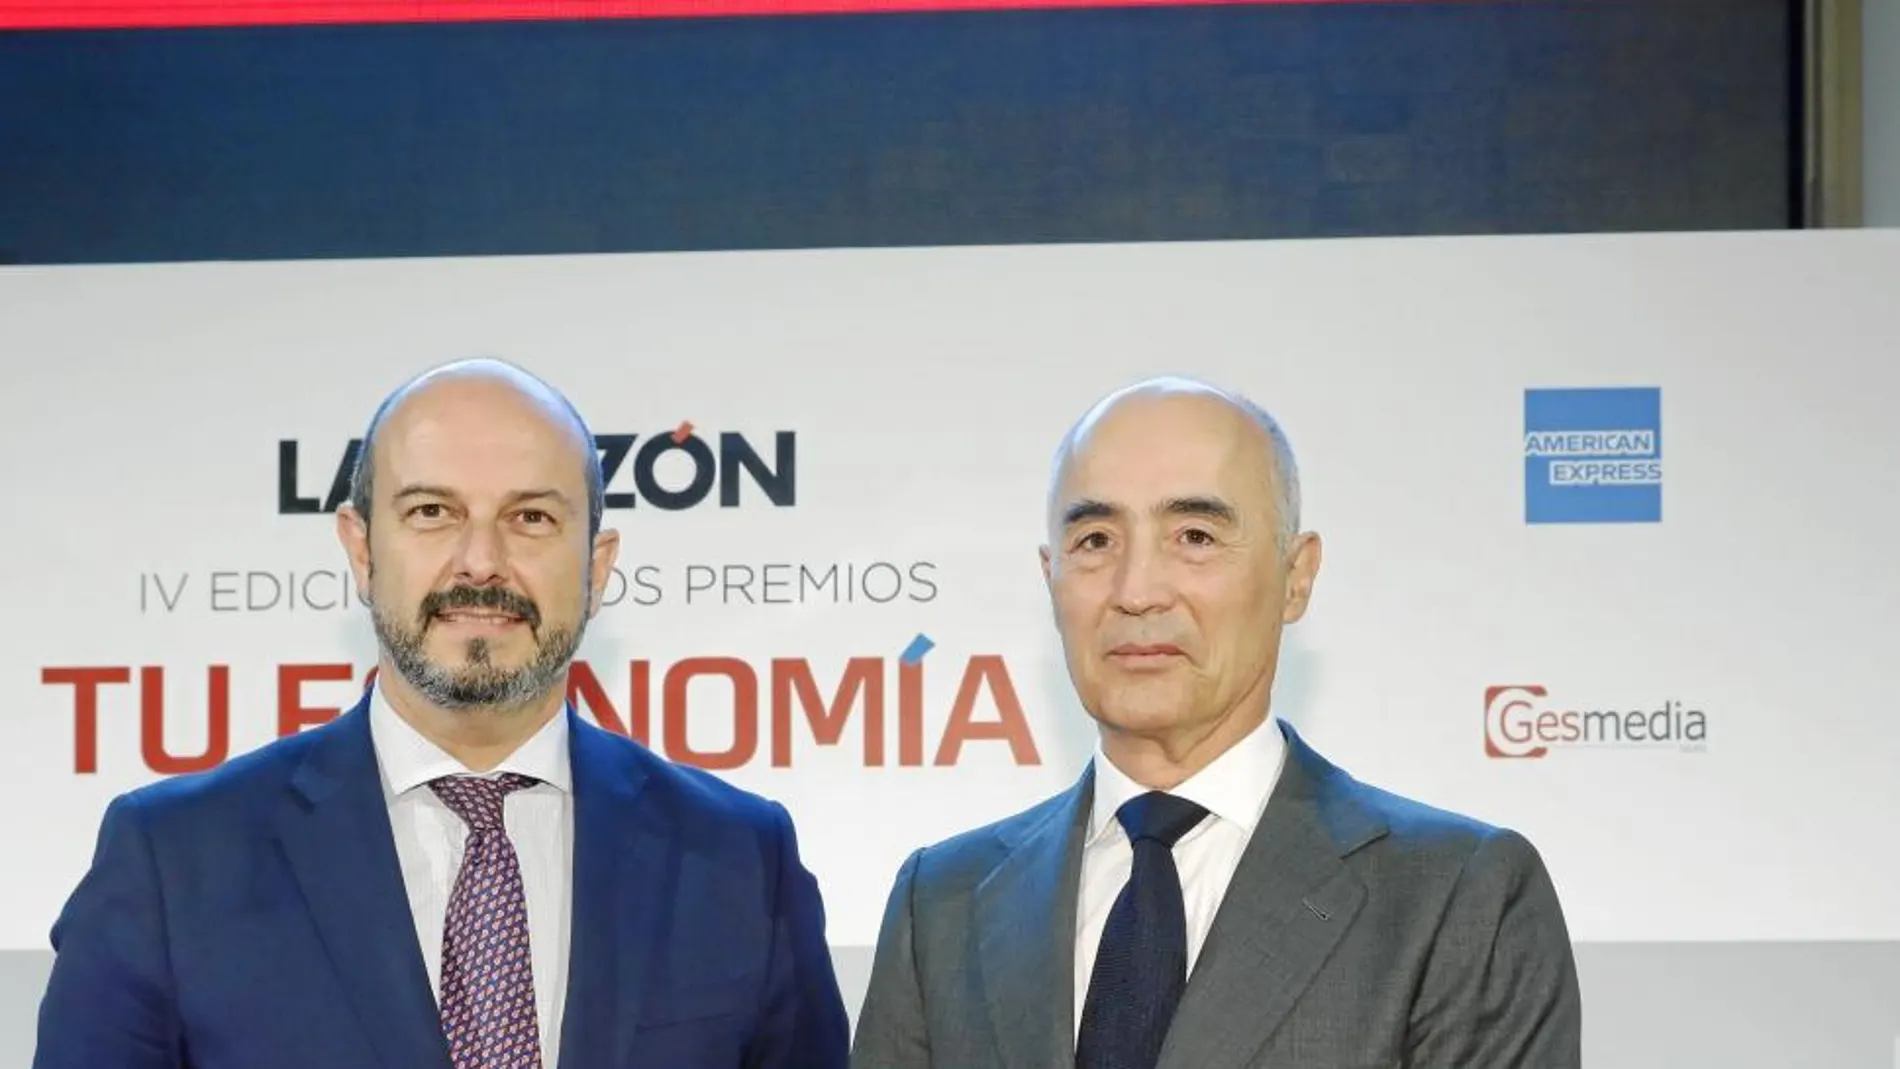 El vicepresidente de la Comunidad de Madrid fue el encargado de entregar el Premio Tu Economía a la Mejor Trayectoria Empresarial al presidente de Ferrovial, Rafael del Pino